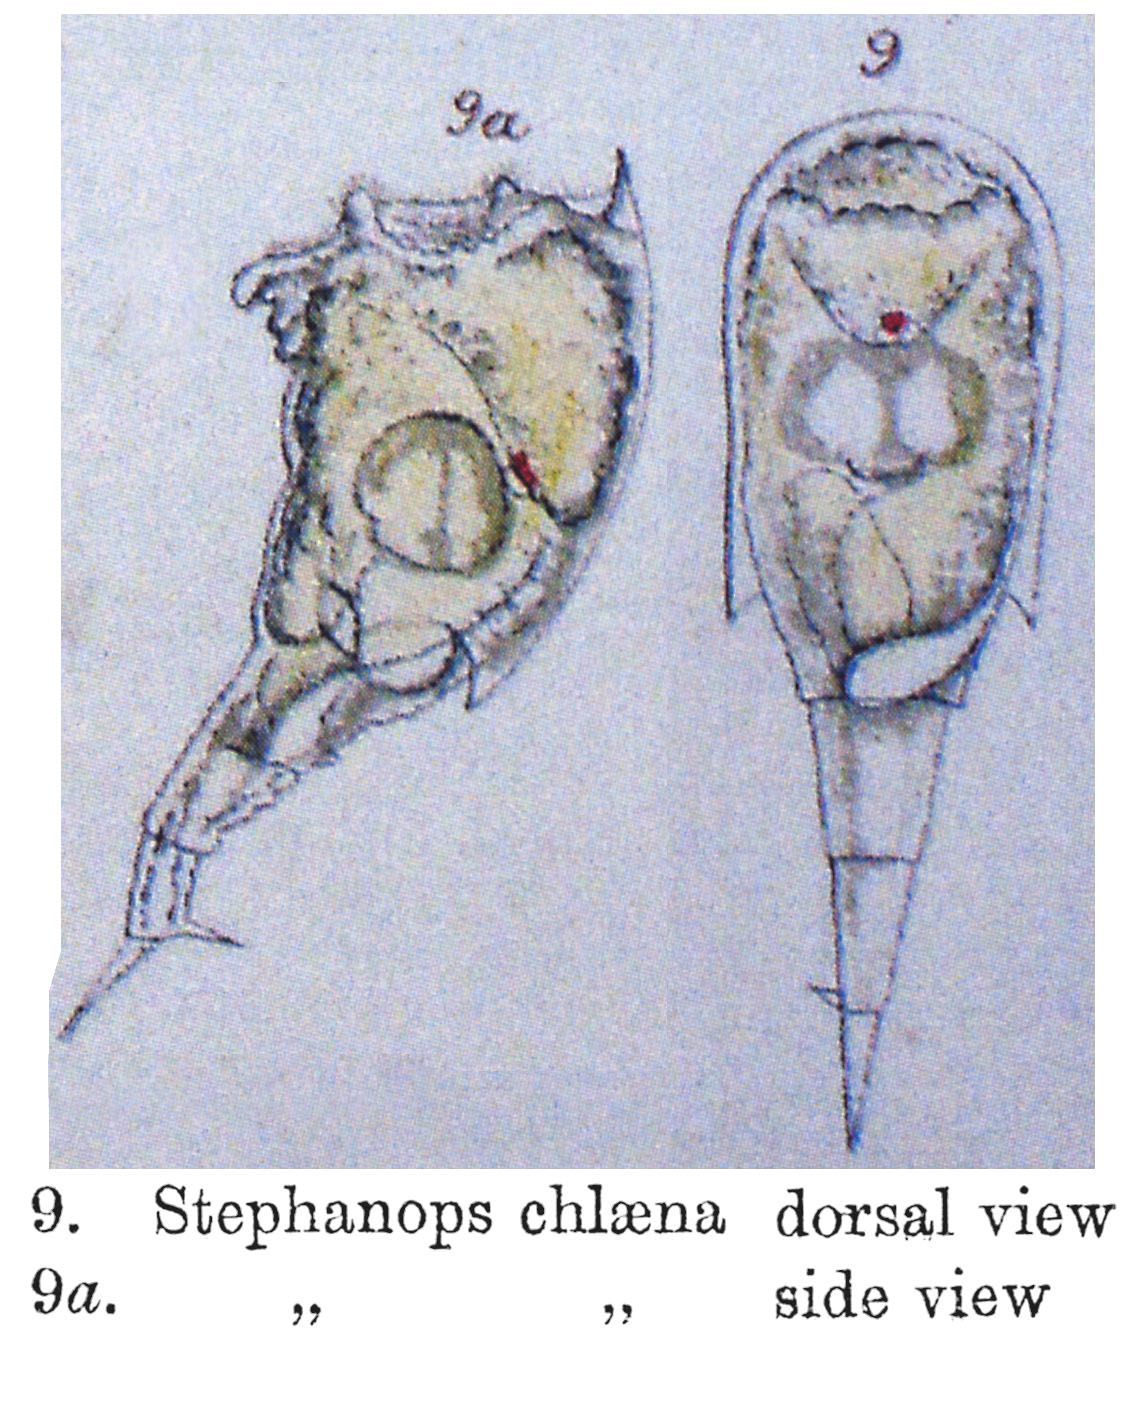 Image of Mikrocodides chlaena (Gosse 1886)